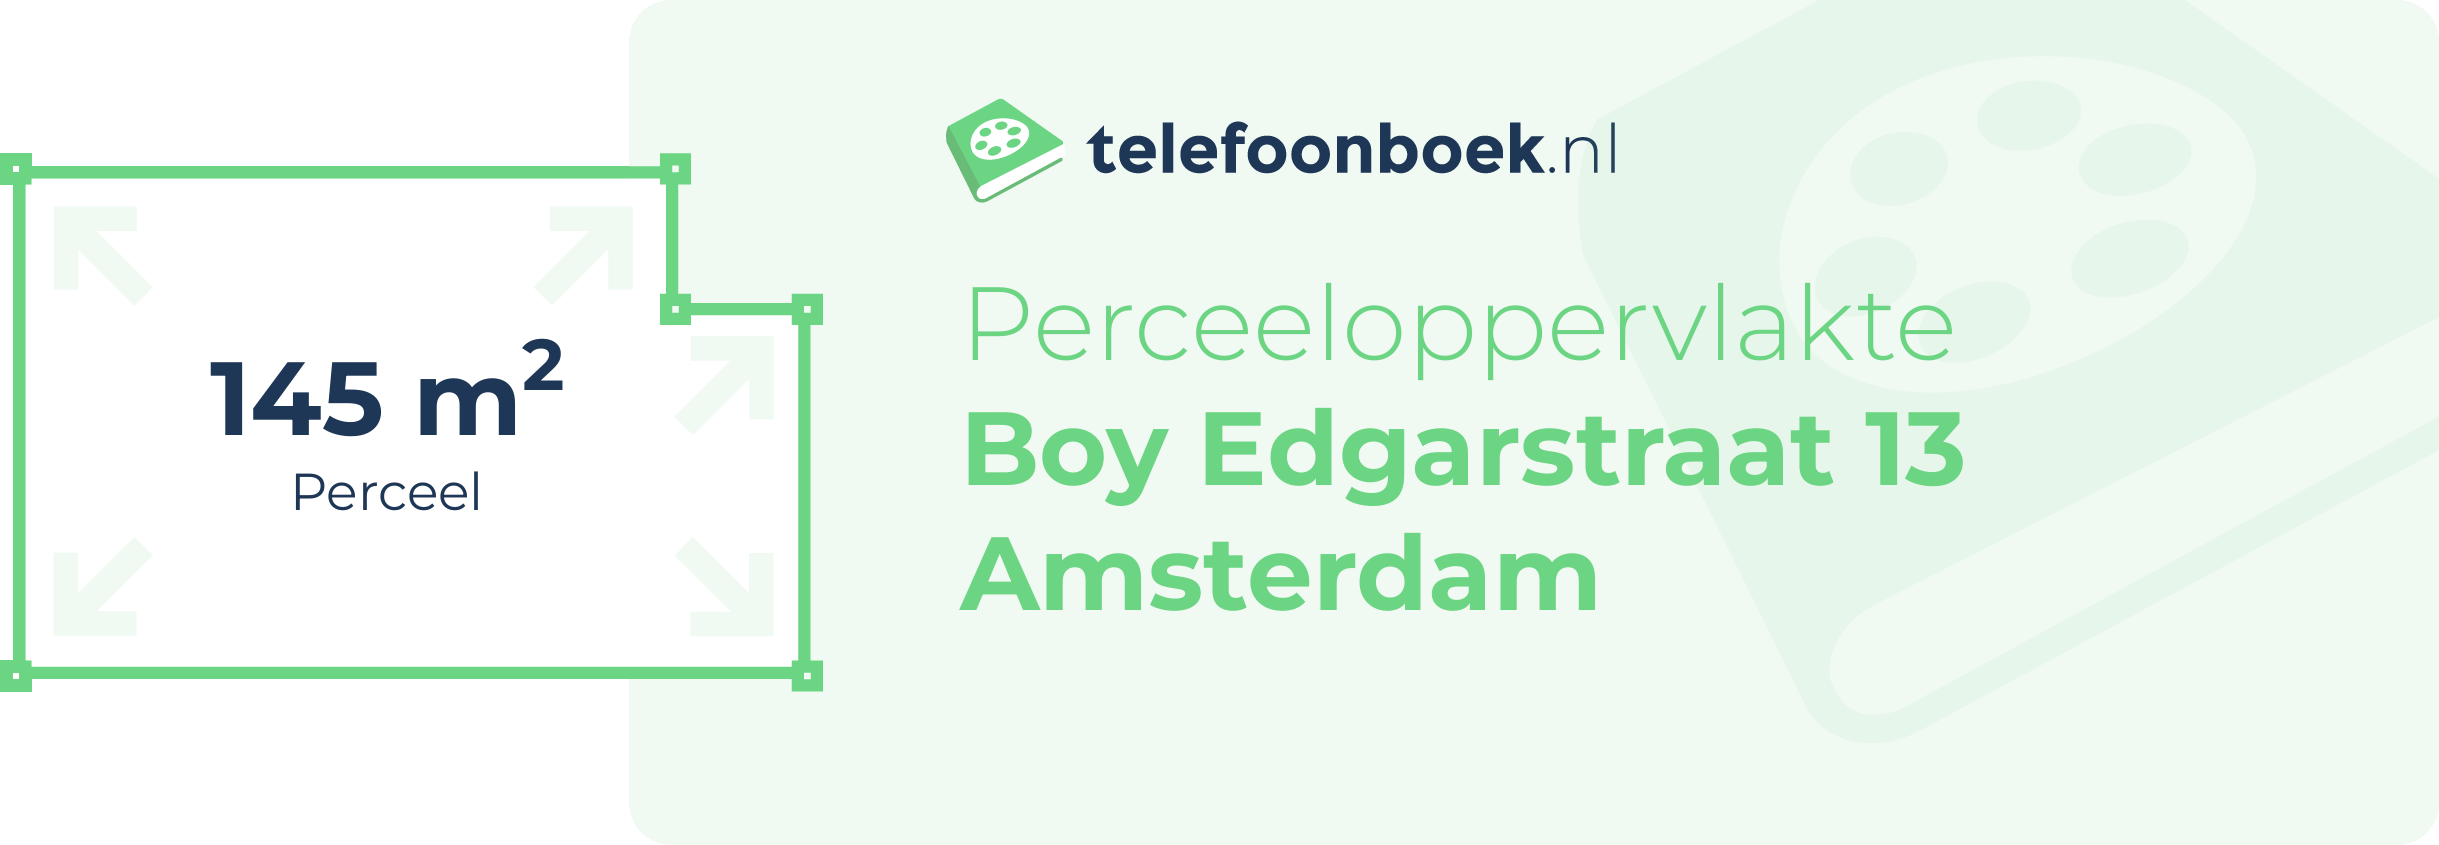 Perceeloppervlakte Boy Edgarstraat 13 Amsterdam